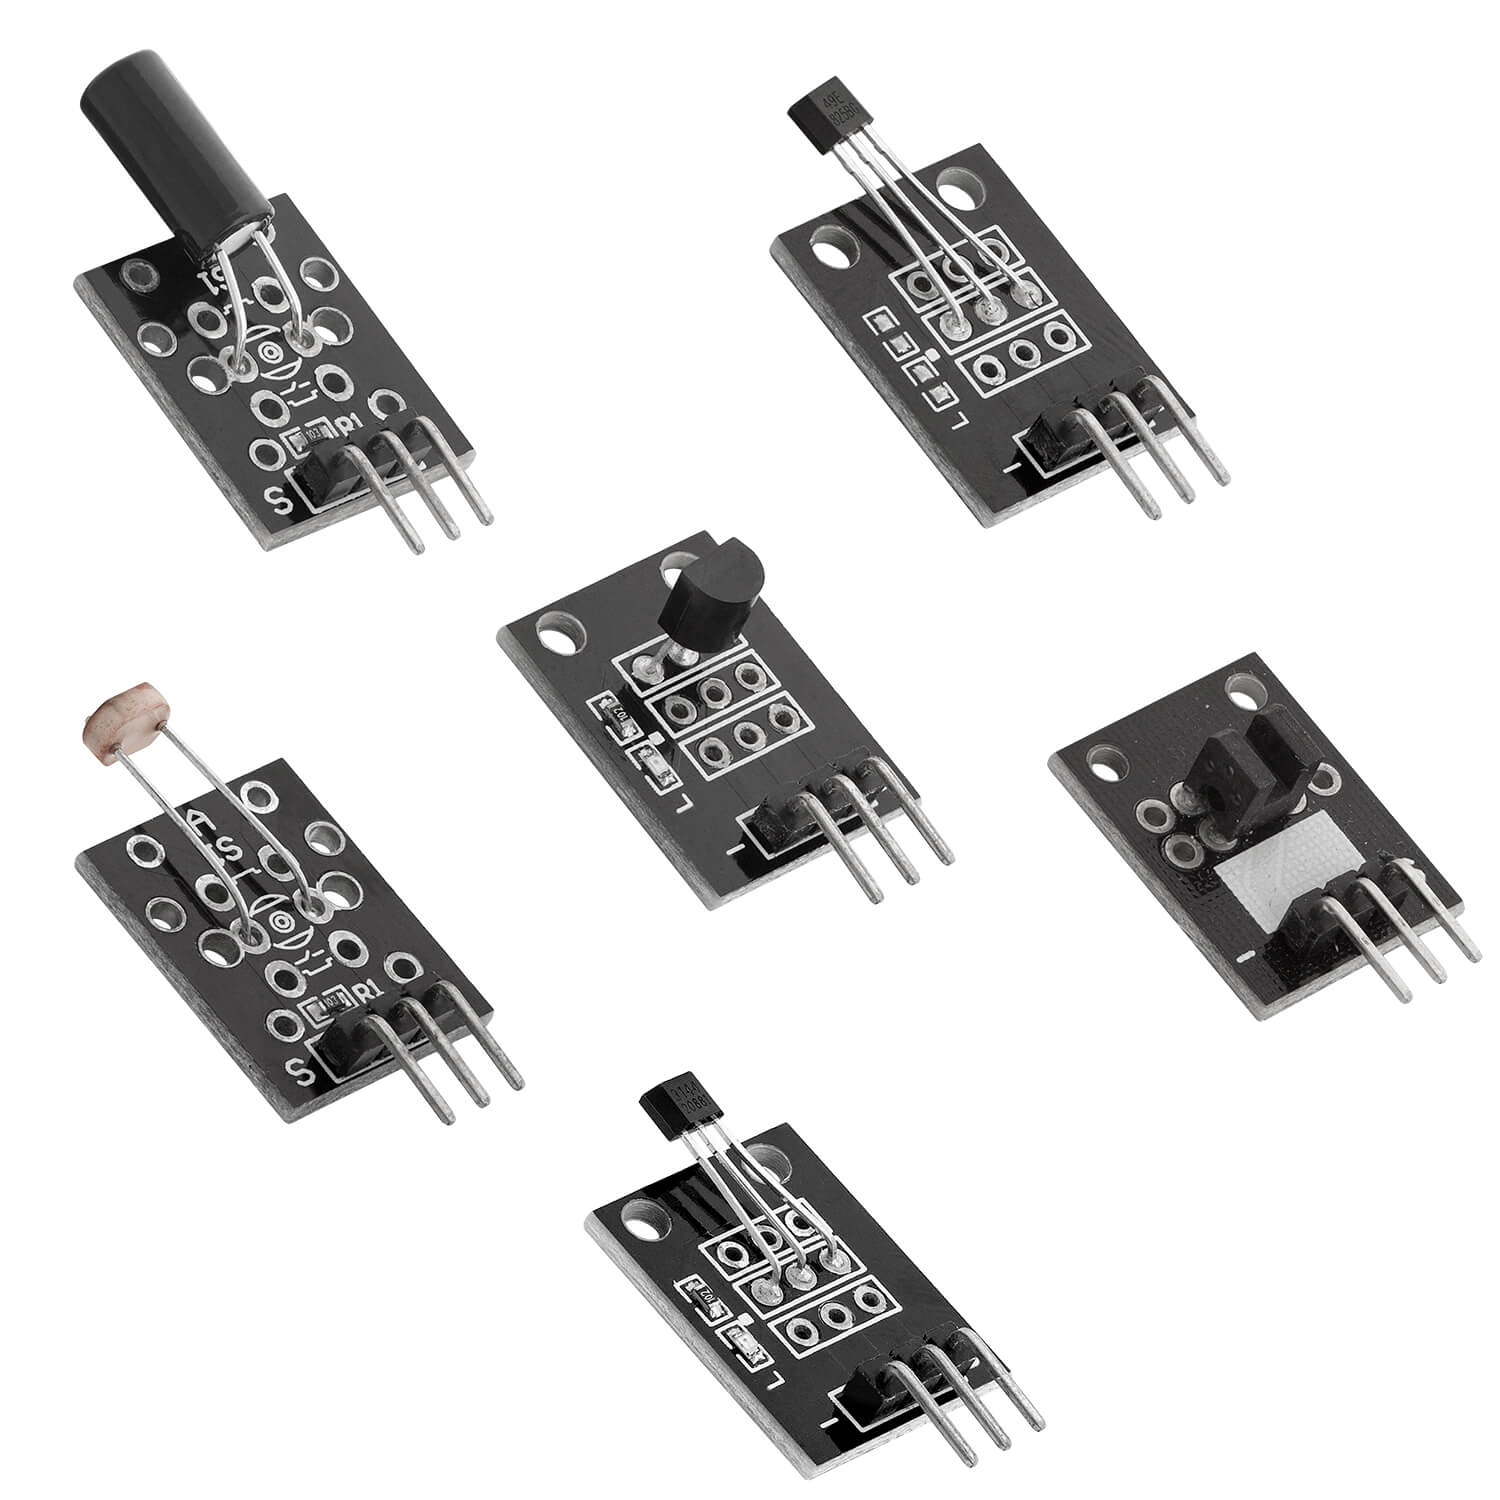 Kit de módulo de sensor 35 en 1 y kit de accesorios compatible con Arduino y Raspberry Pi